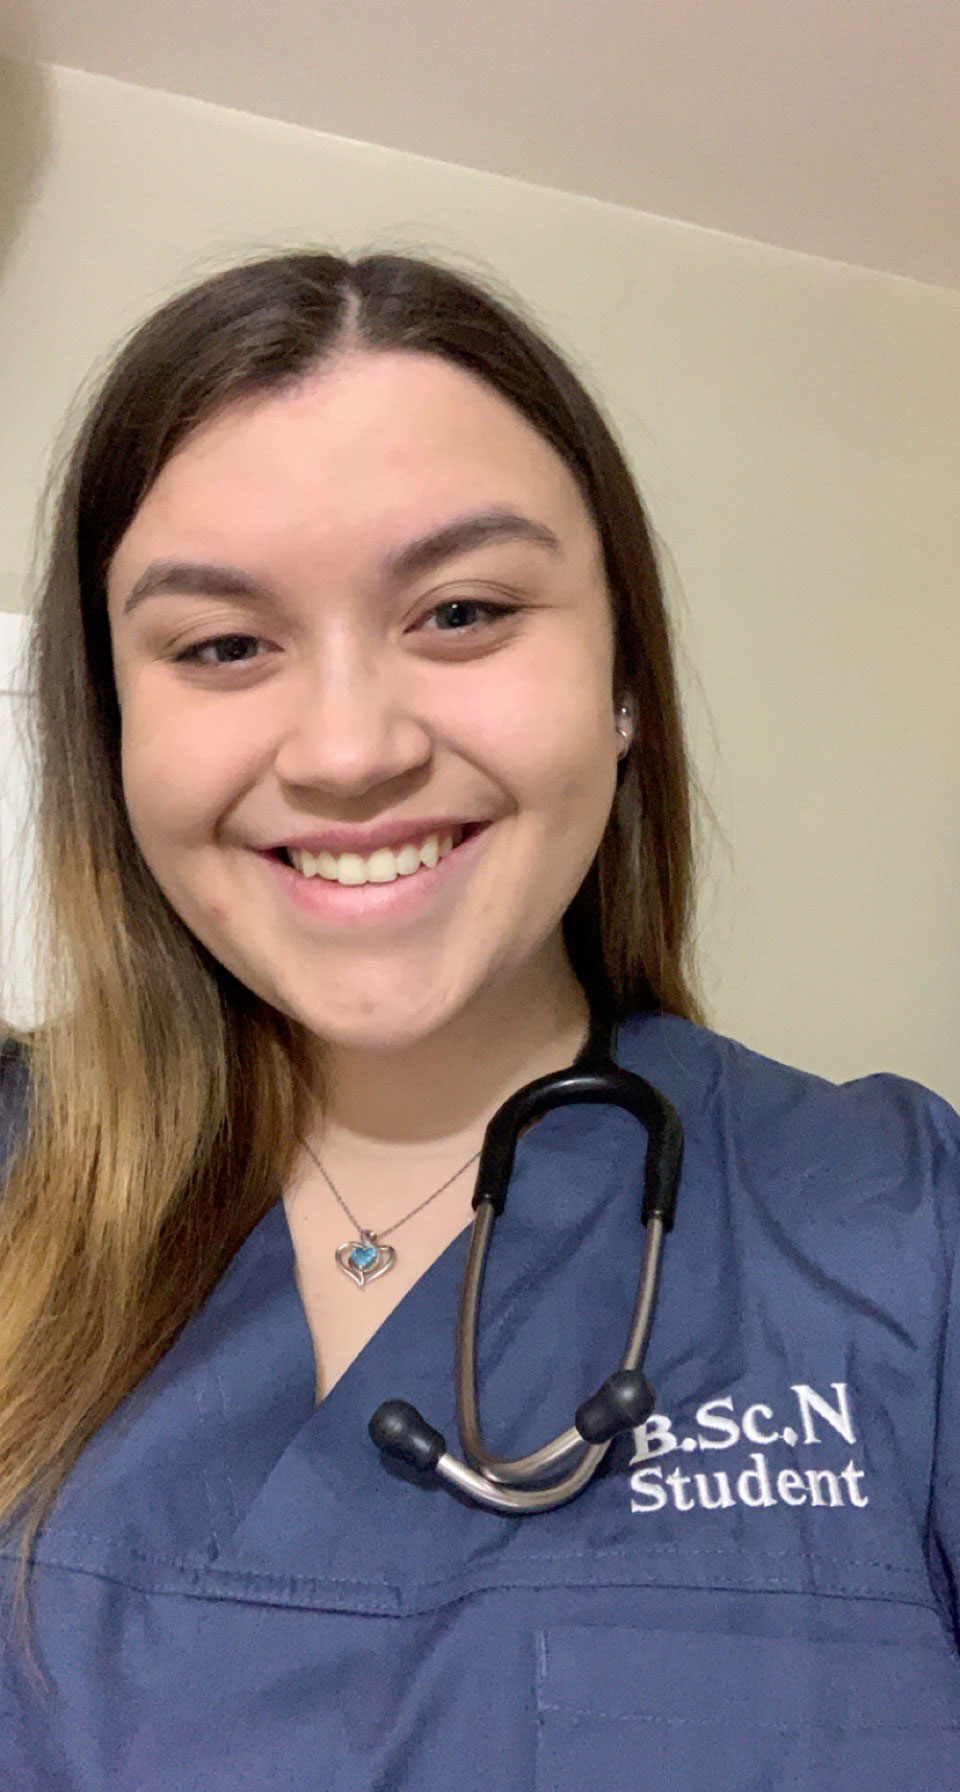 Nursing student Emily Kaun wearing hospital scrubs